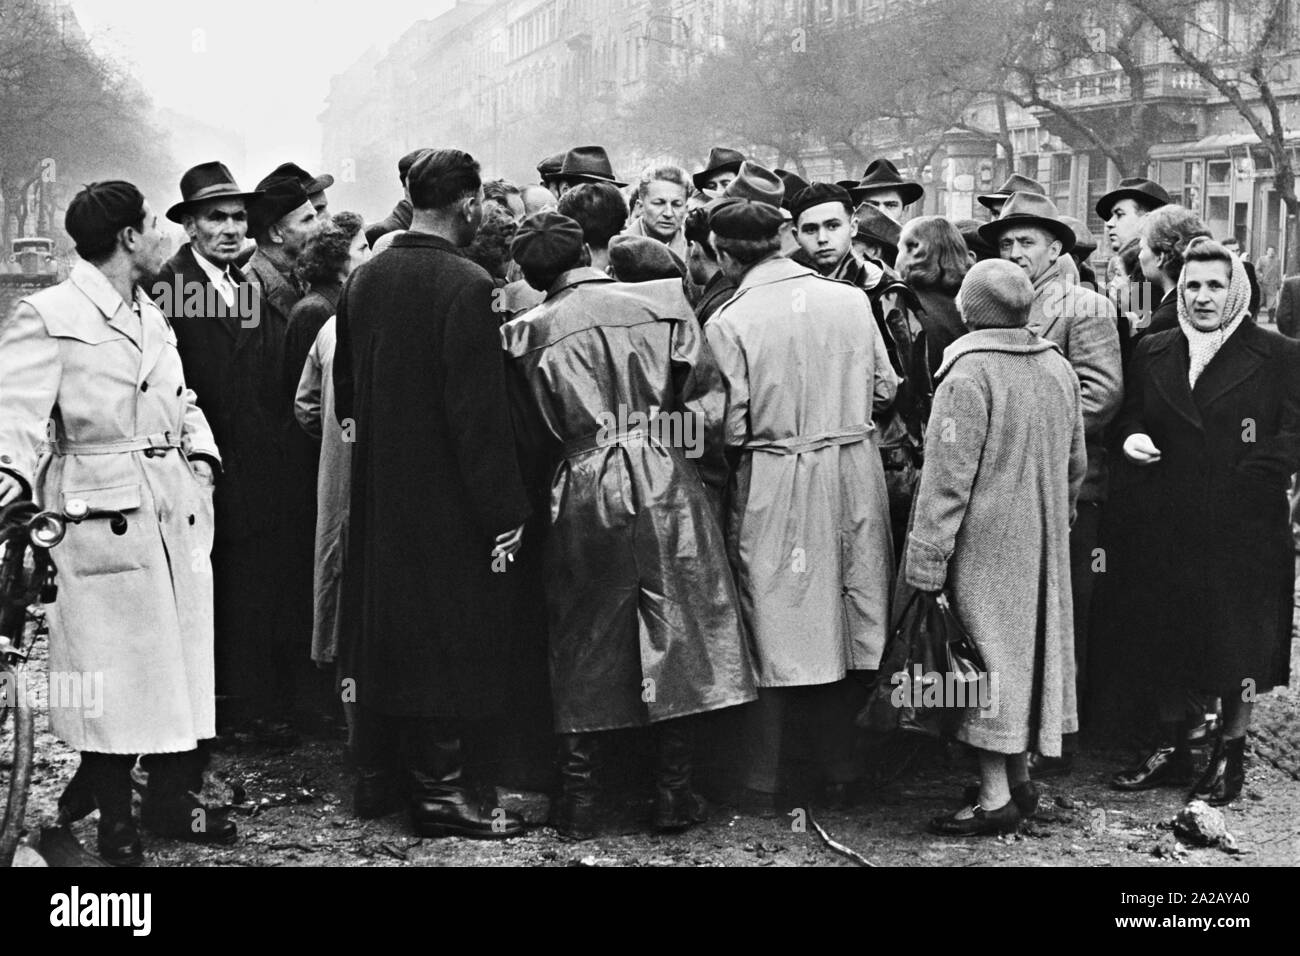 Eine westliche Reporter wird von hungrigen Informationen ungarische Volk in Budapest während des Ungarischen Aufstandes umgeben. Stockfoto